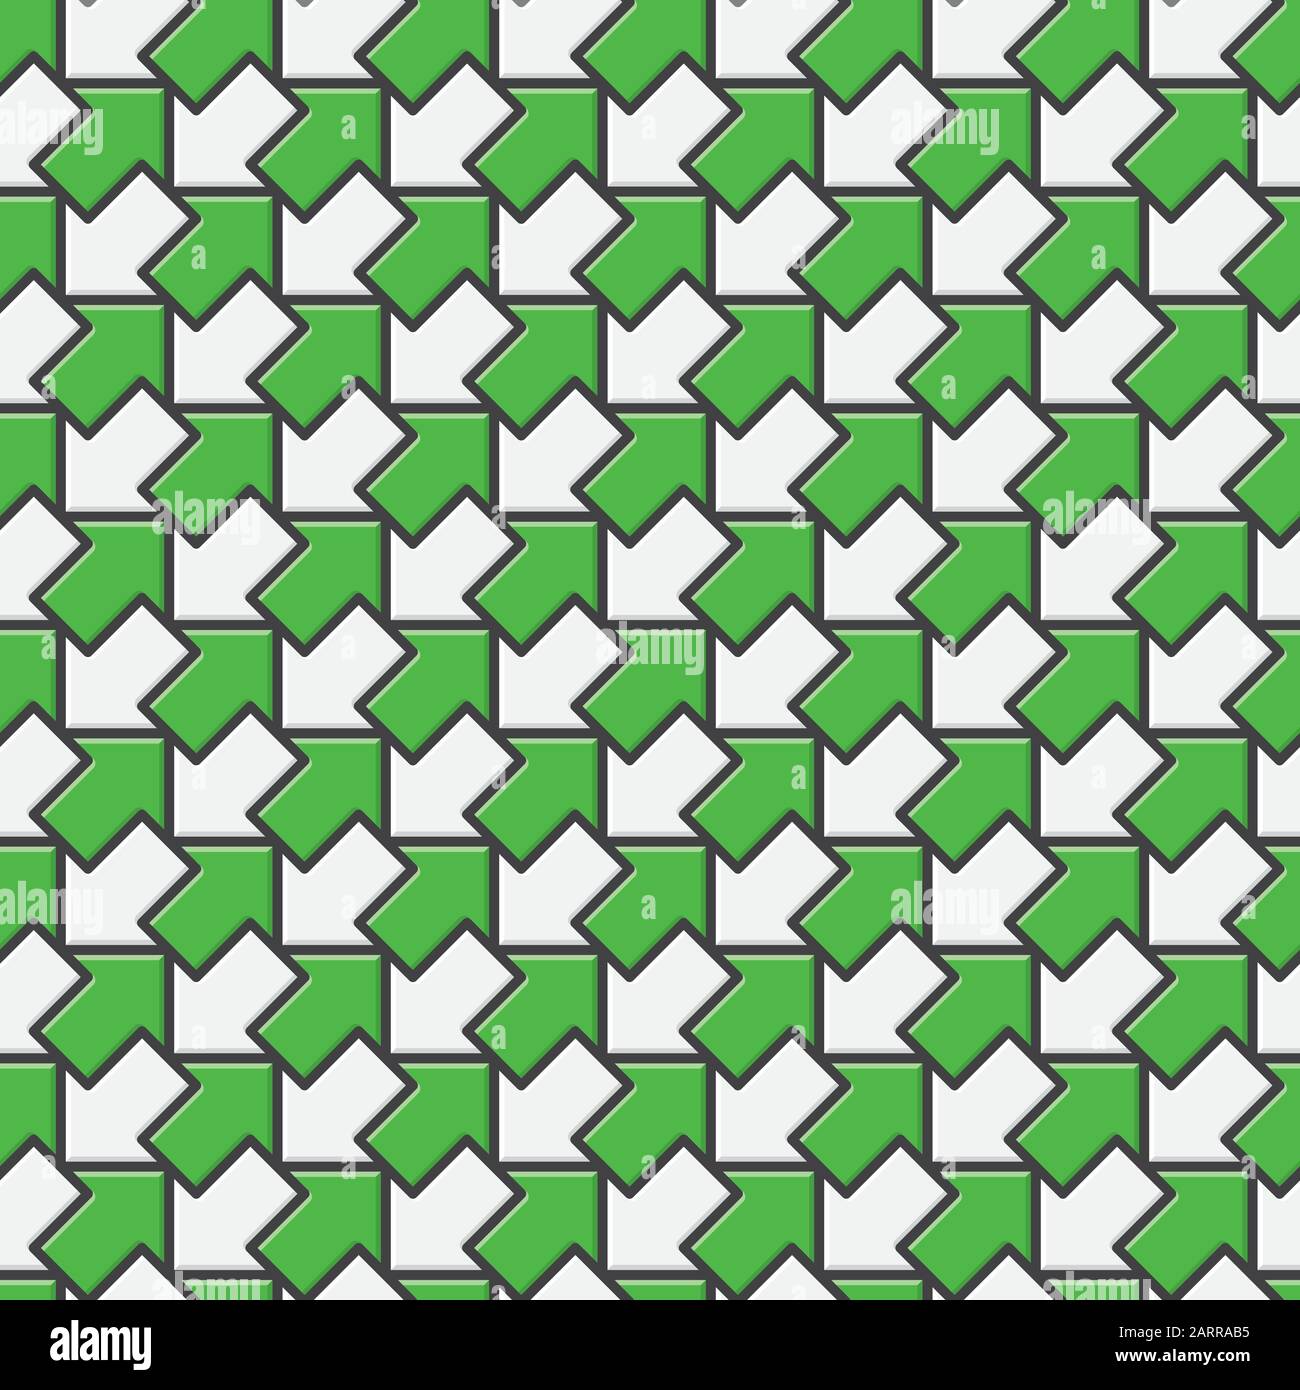 Schema vettoriale senza cuciture con frecce diagonali verdi e bianche in direzioni opposte. Opposti e contraddizioni concetto di fondo Illustrazione Vettoriale